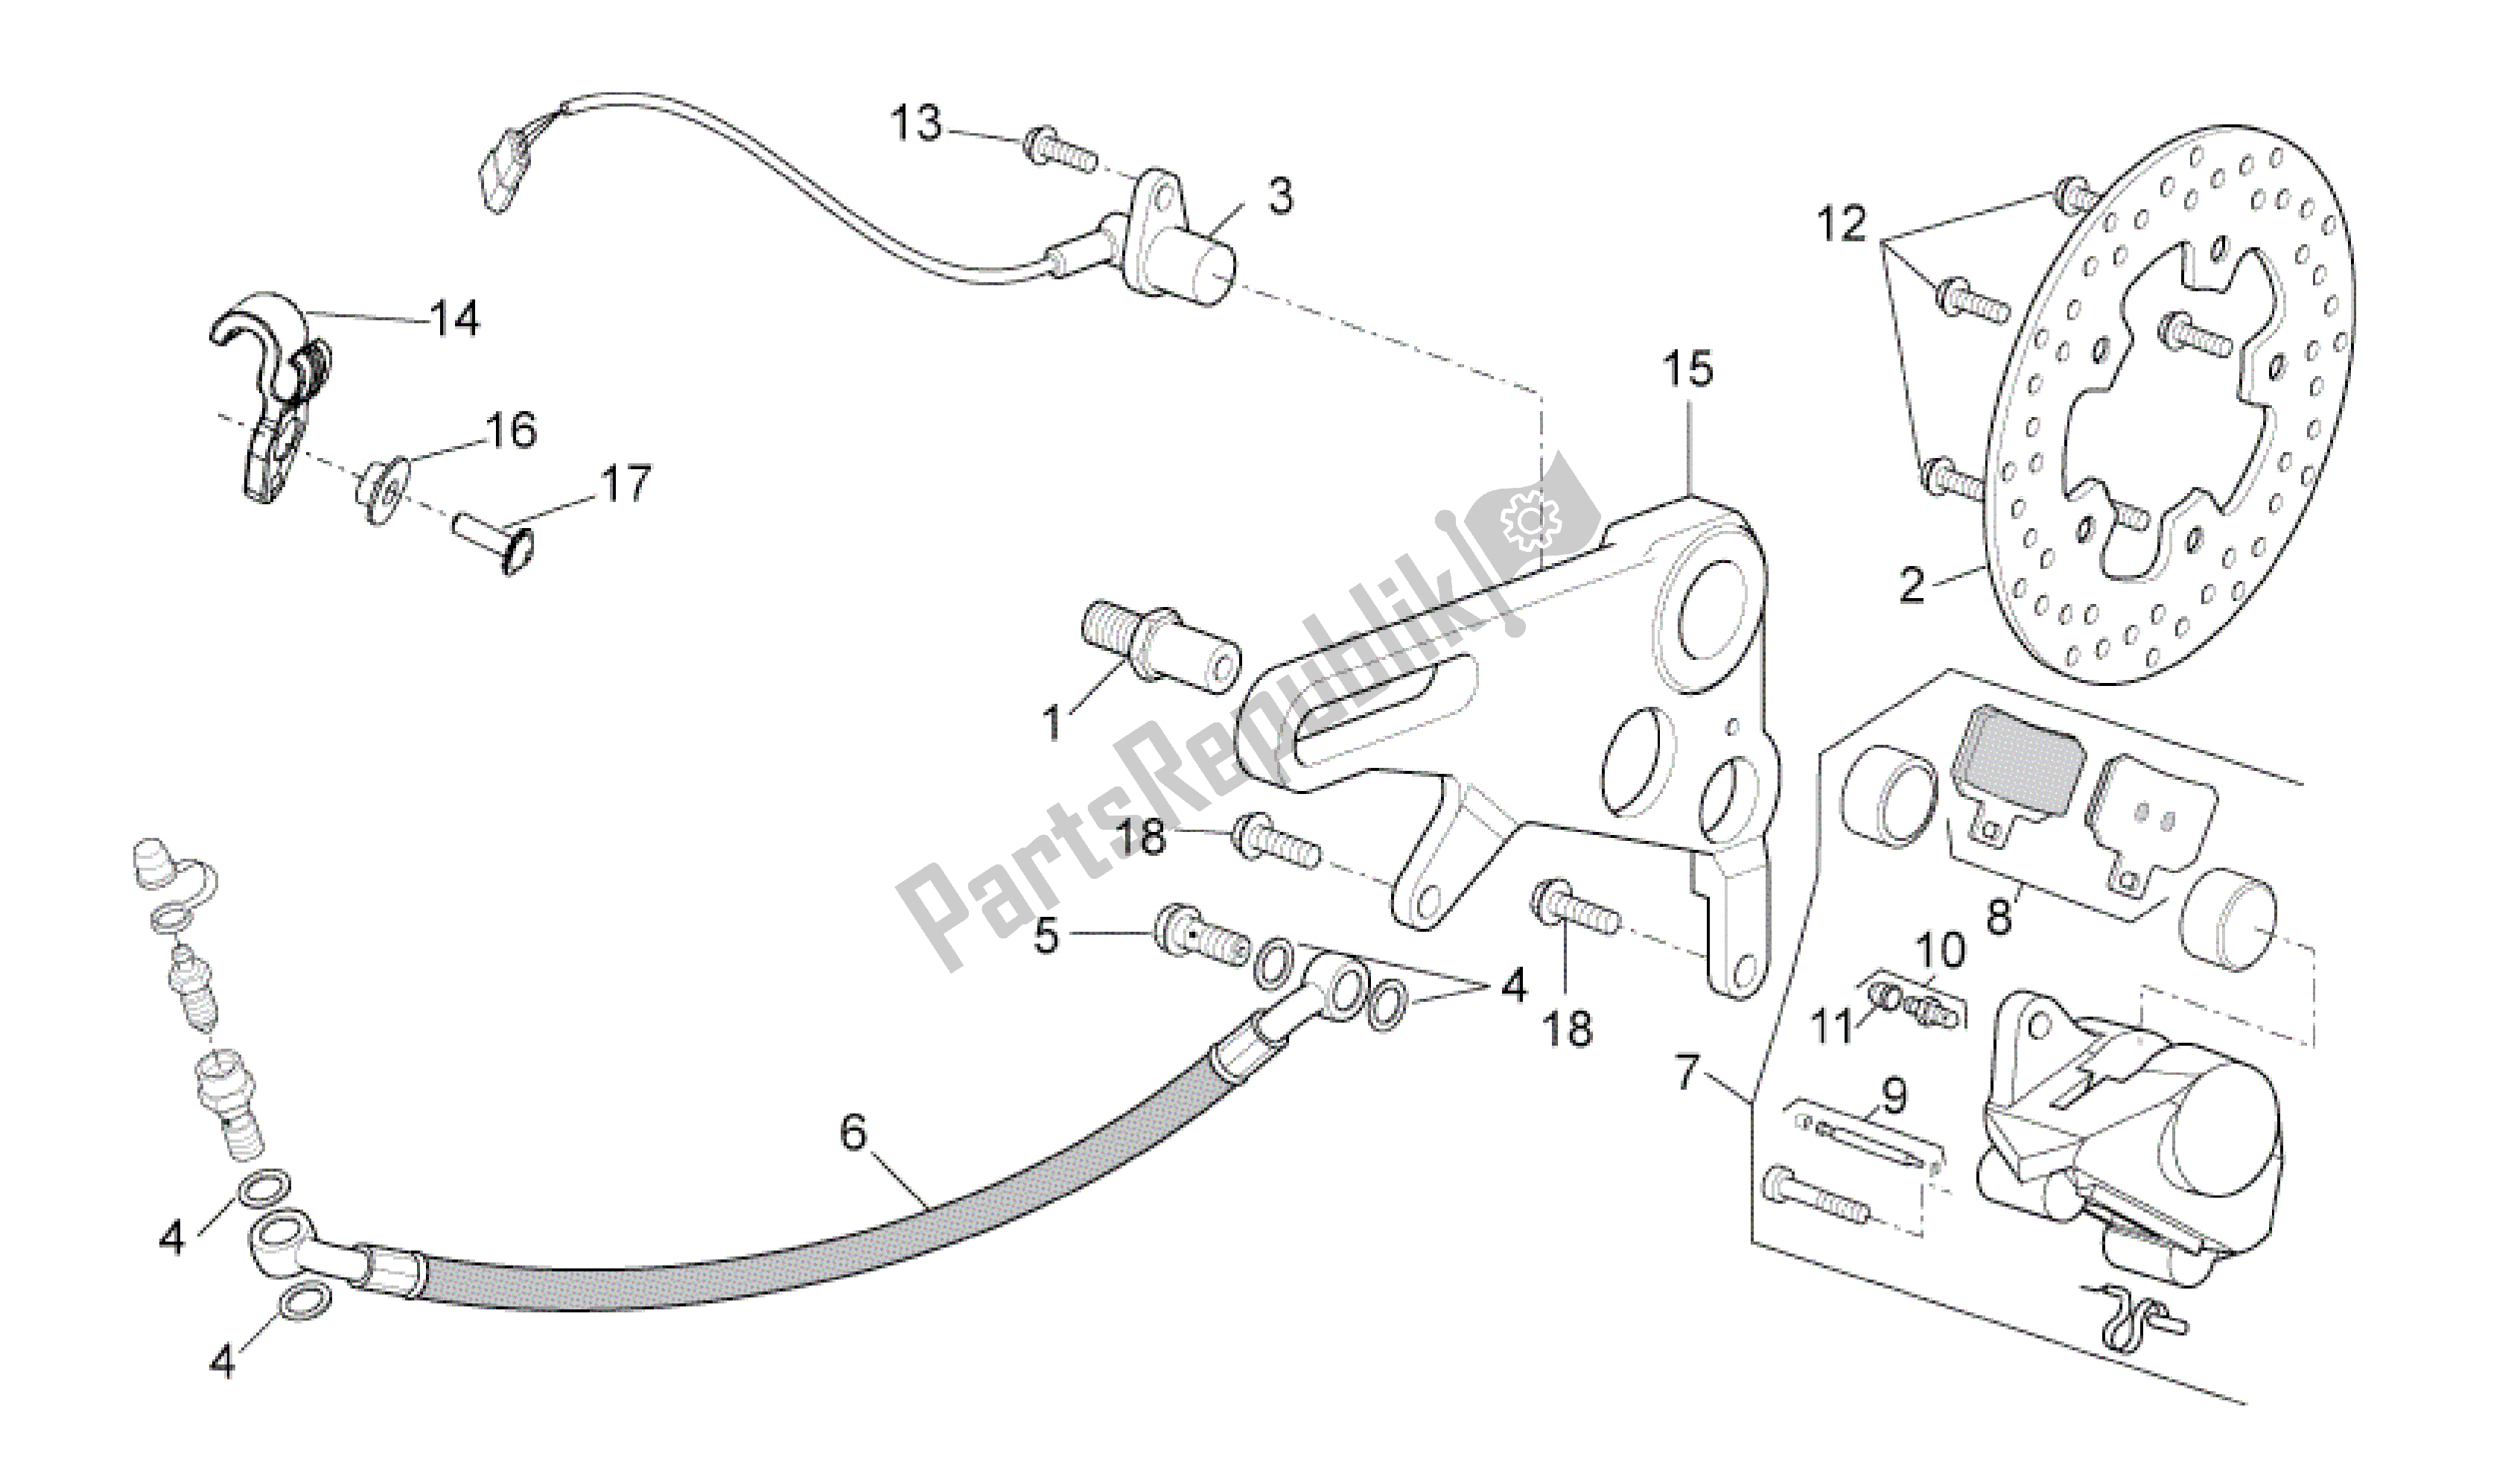 All parts for the Rear Brake Caliper of the Aprilia RSV4 Tuono V4 R Aprc ABS 1000 2014